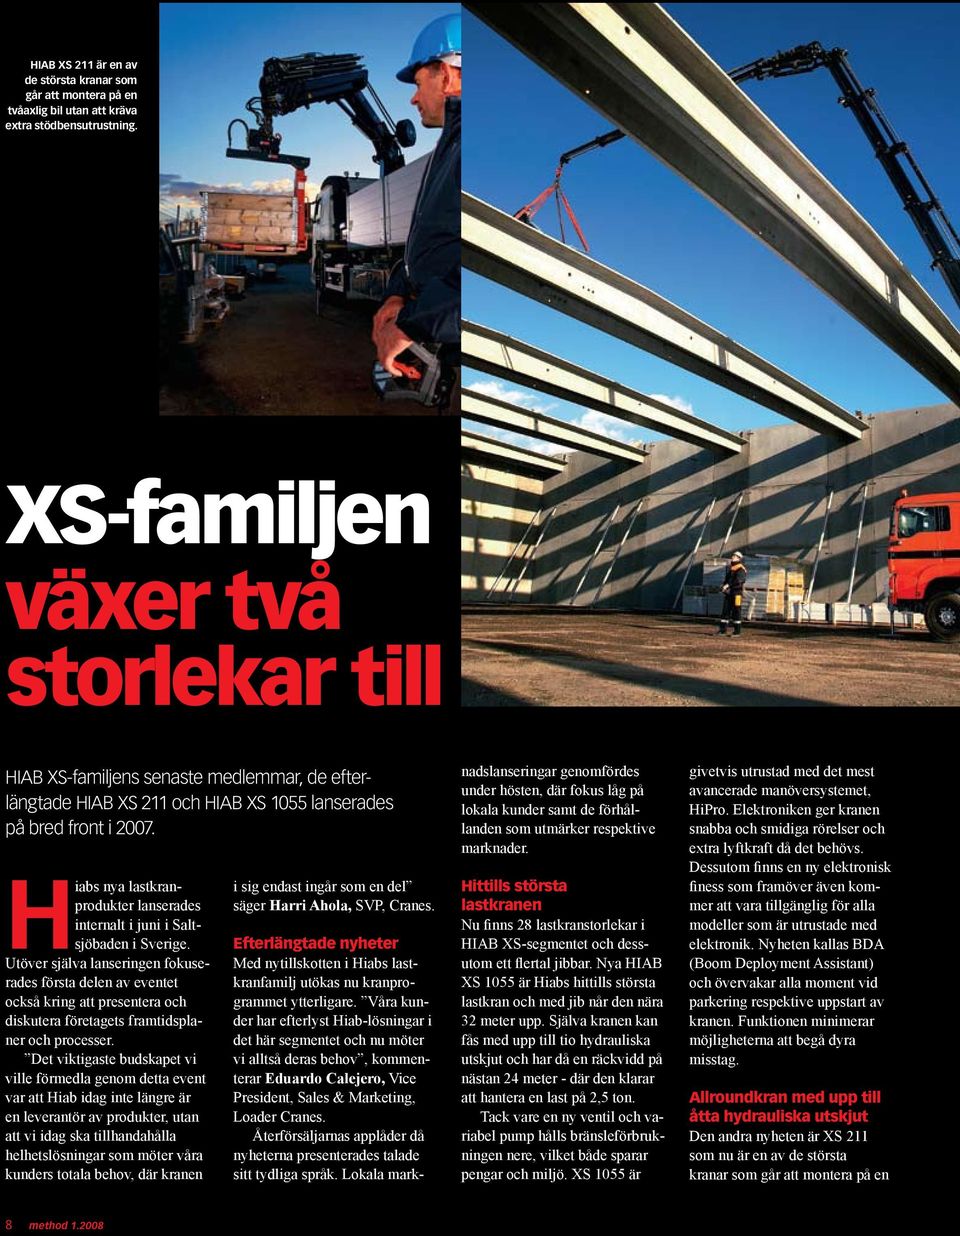 Hiabs nya lastkranprodukter lanserades internalt i juni i Saltsjöbaden i Sverige.